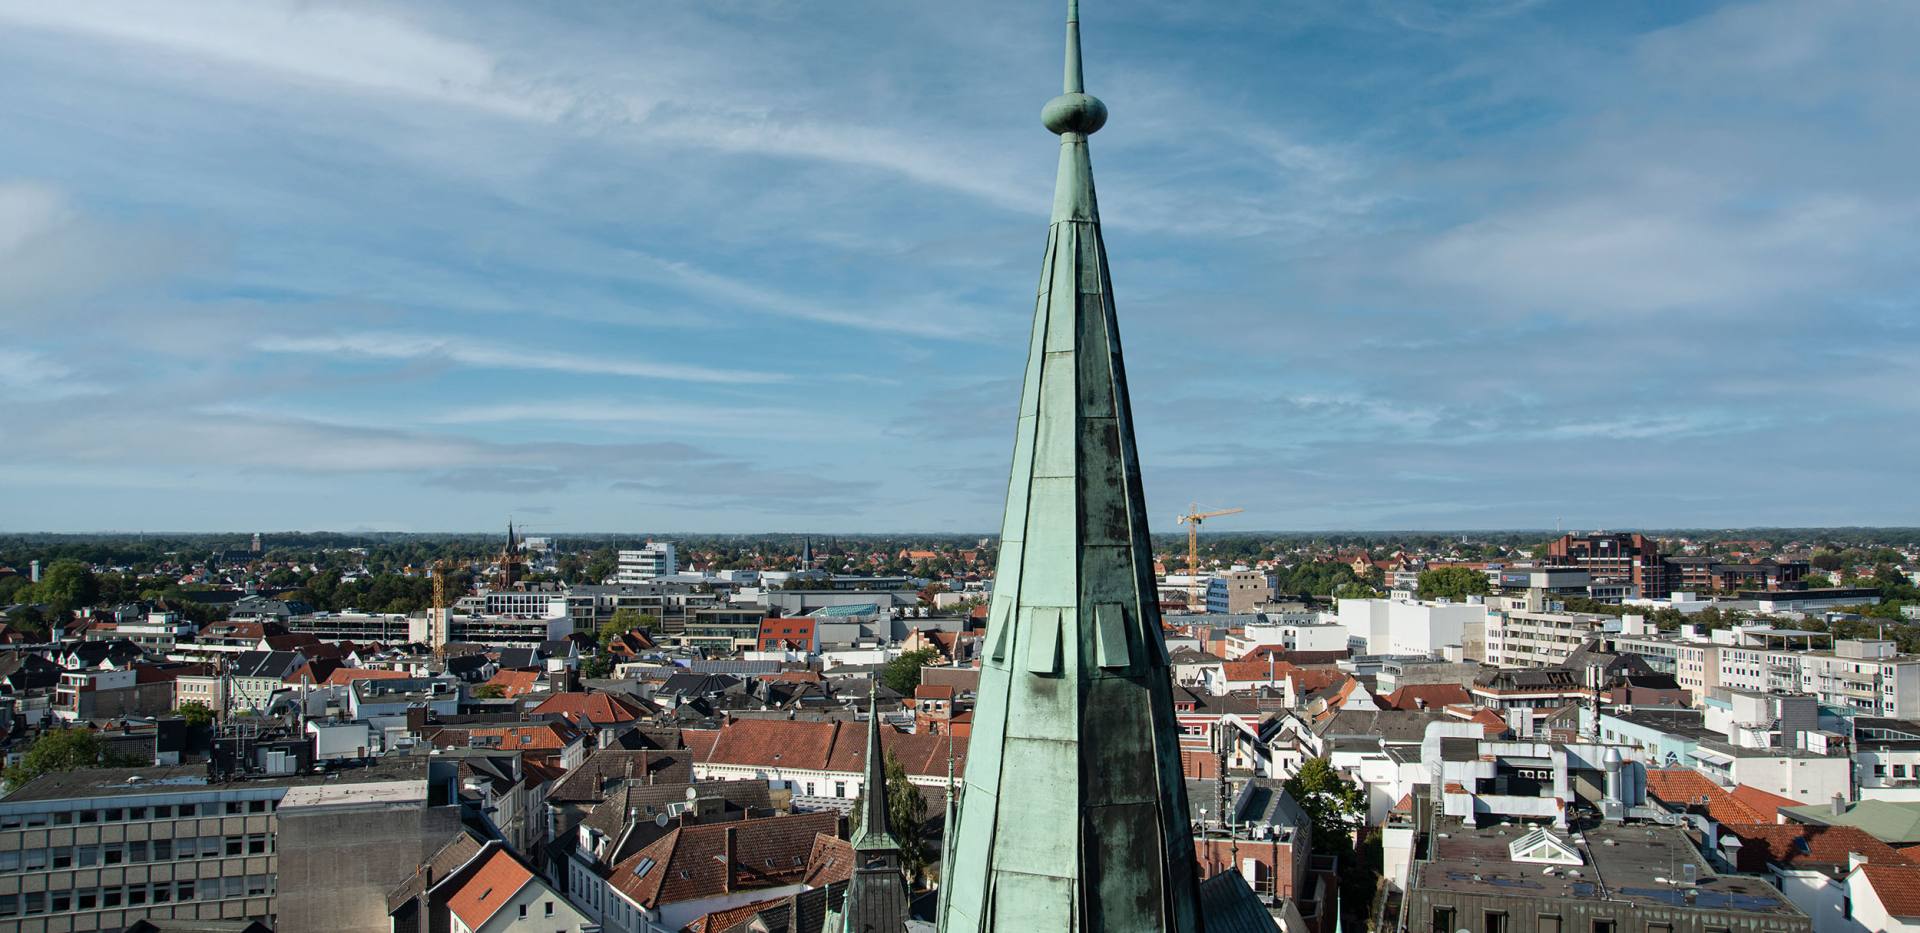 Blick über die Stadt Oldenburg mit Spitze der St. Lamberti-Kirche im Vordergrund